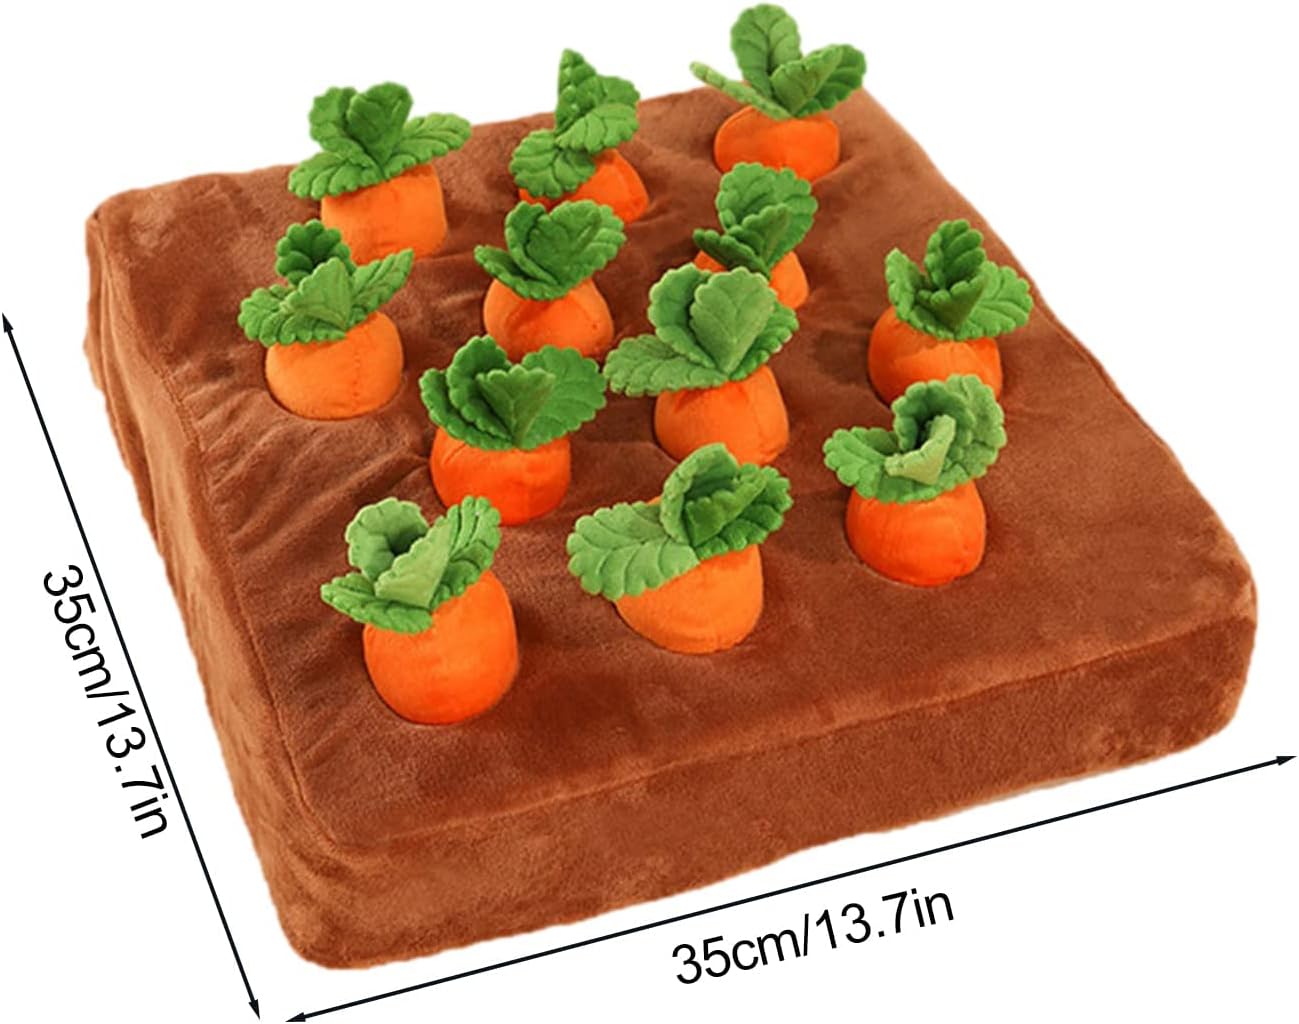 12 Carrots Enrichment Dog Puzzle Toy